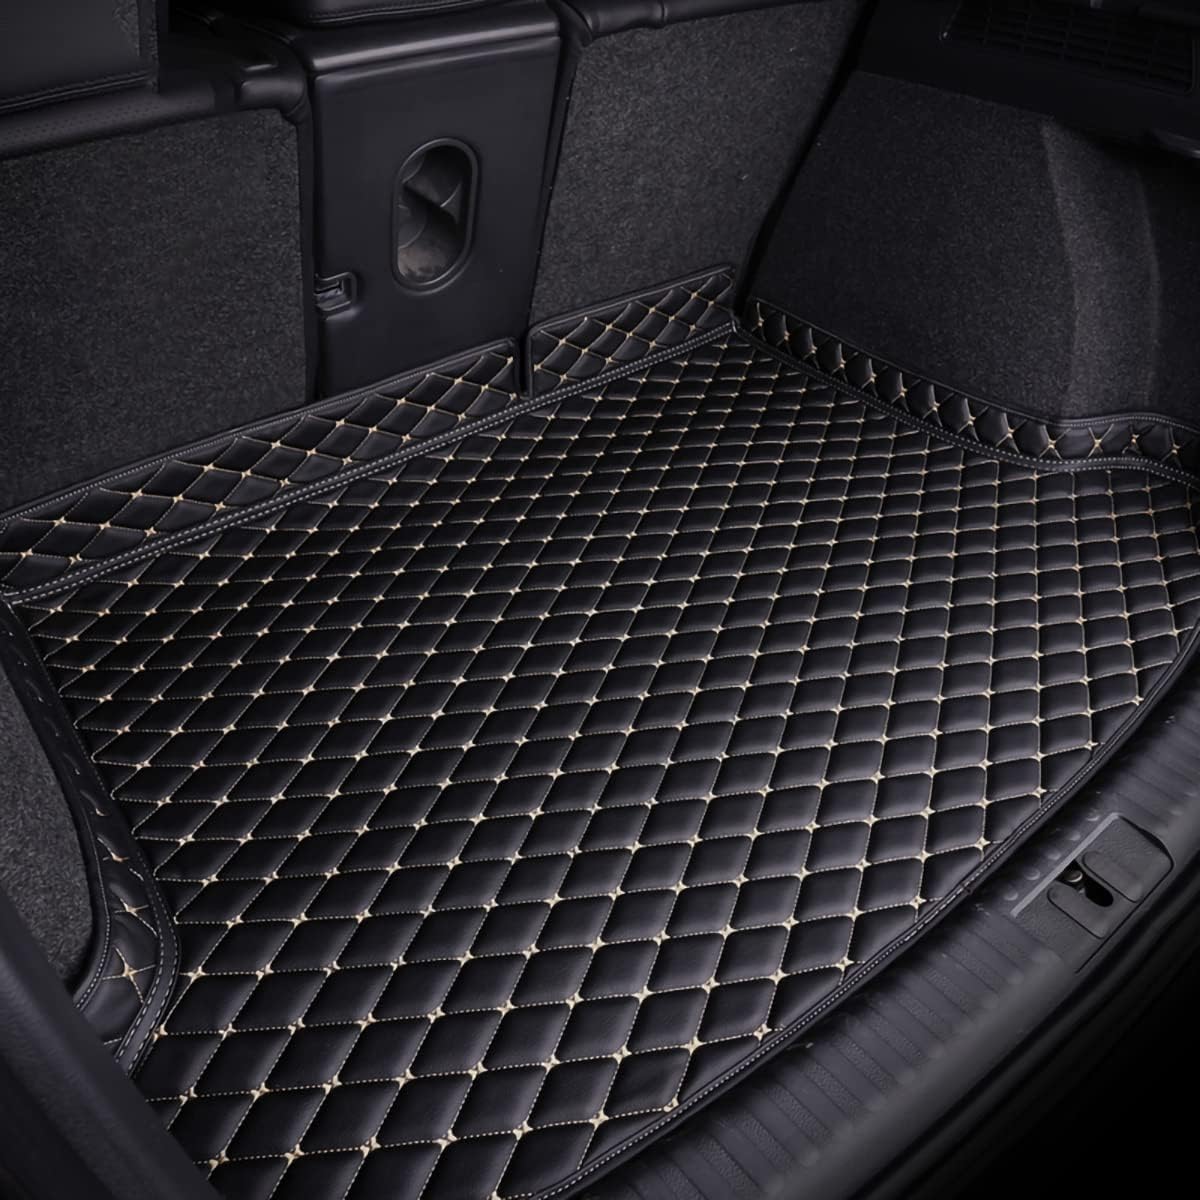 Auto Kofferraummatten für Toyota Handlander 5seats 2015-, Kratzfeste Kofferraum Schutzmatten.,Black Beige von LPOOSAKW